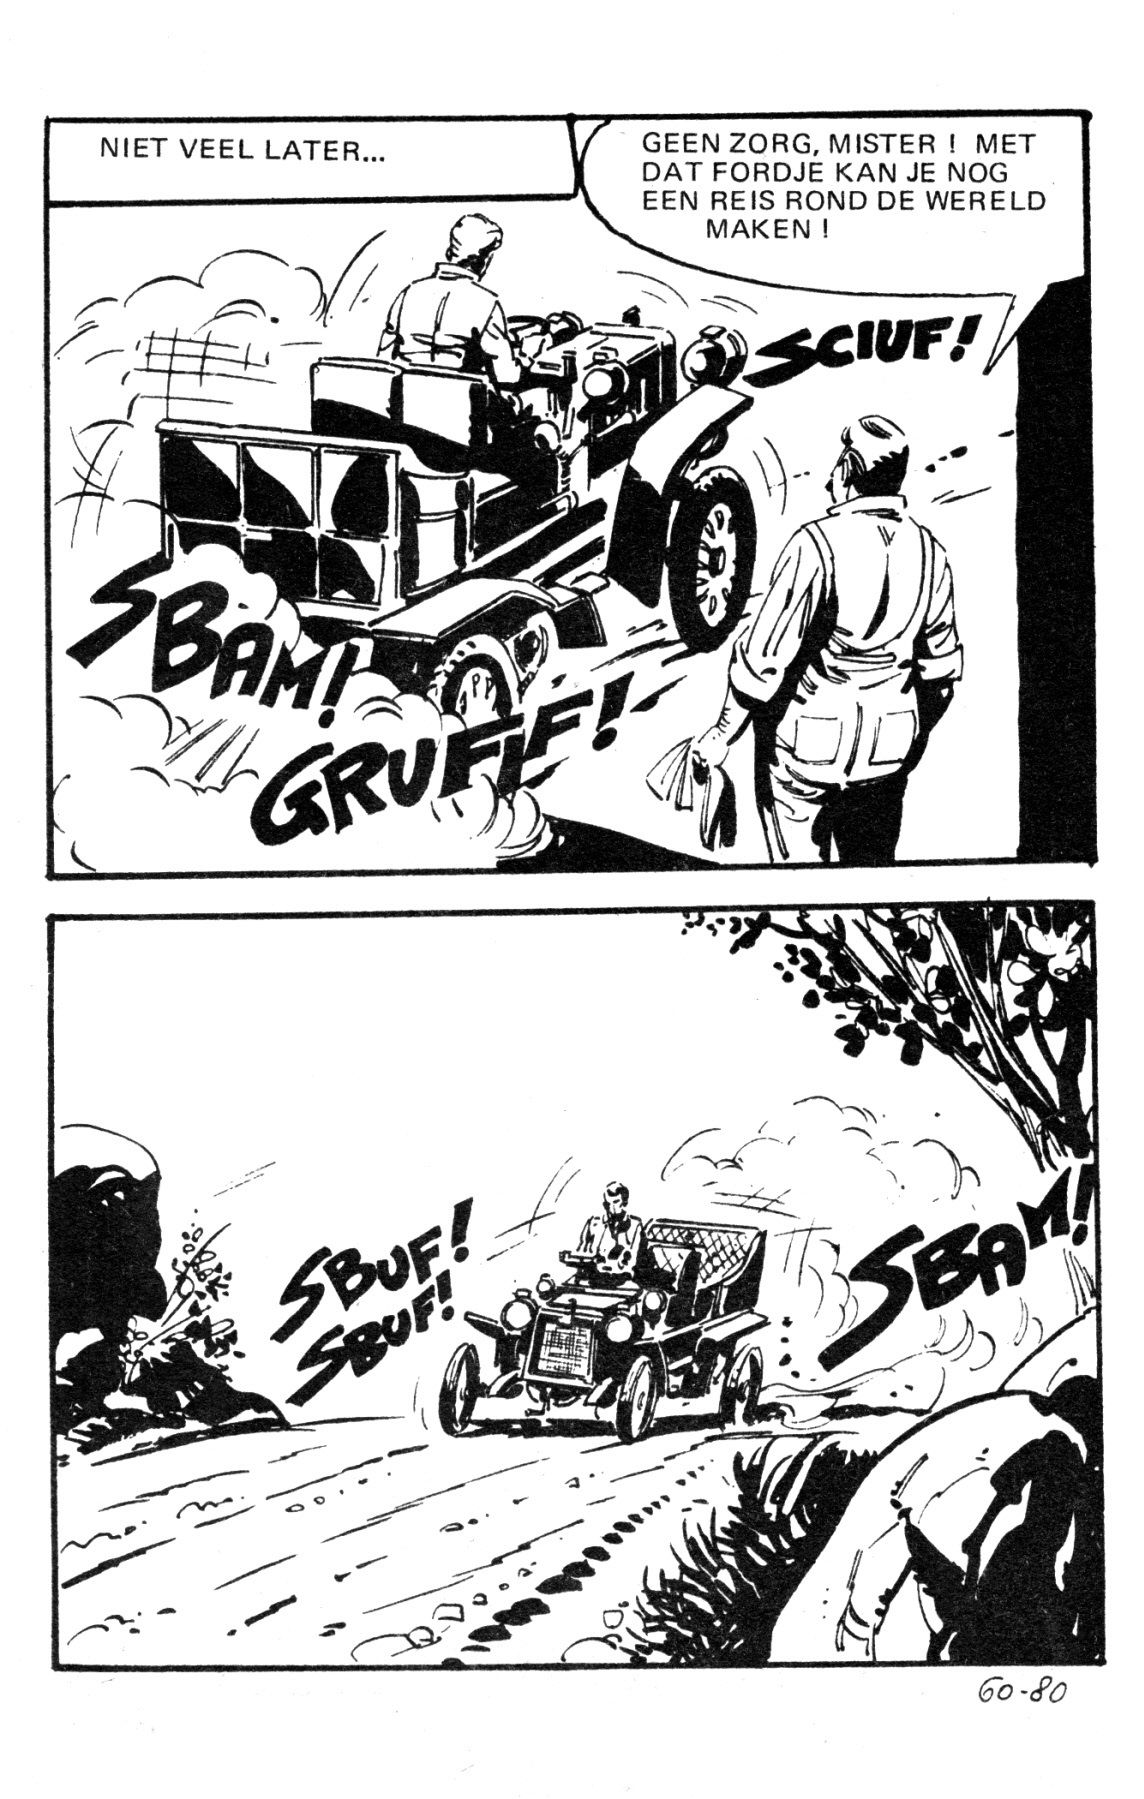 Wallestein Het Monster - 051 - Het Derde Slachtoffer (Dutch) In 9 series...meer dan 90 strips uit de "Wallestein" serie! 83